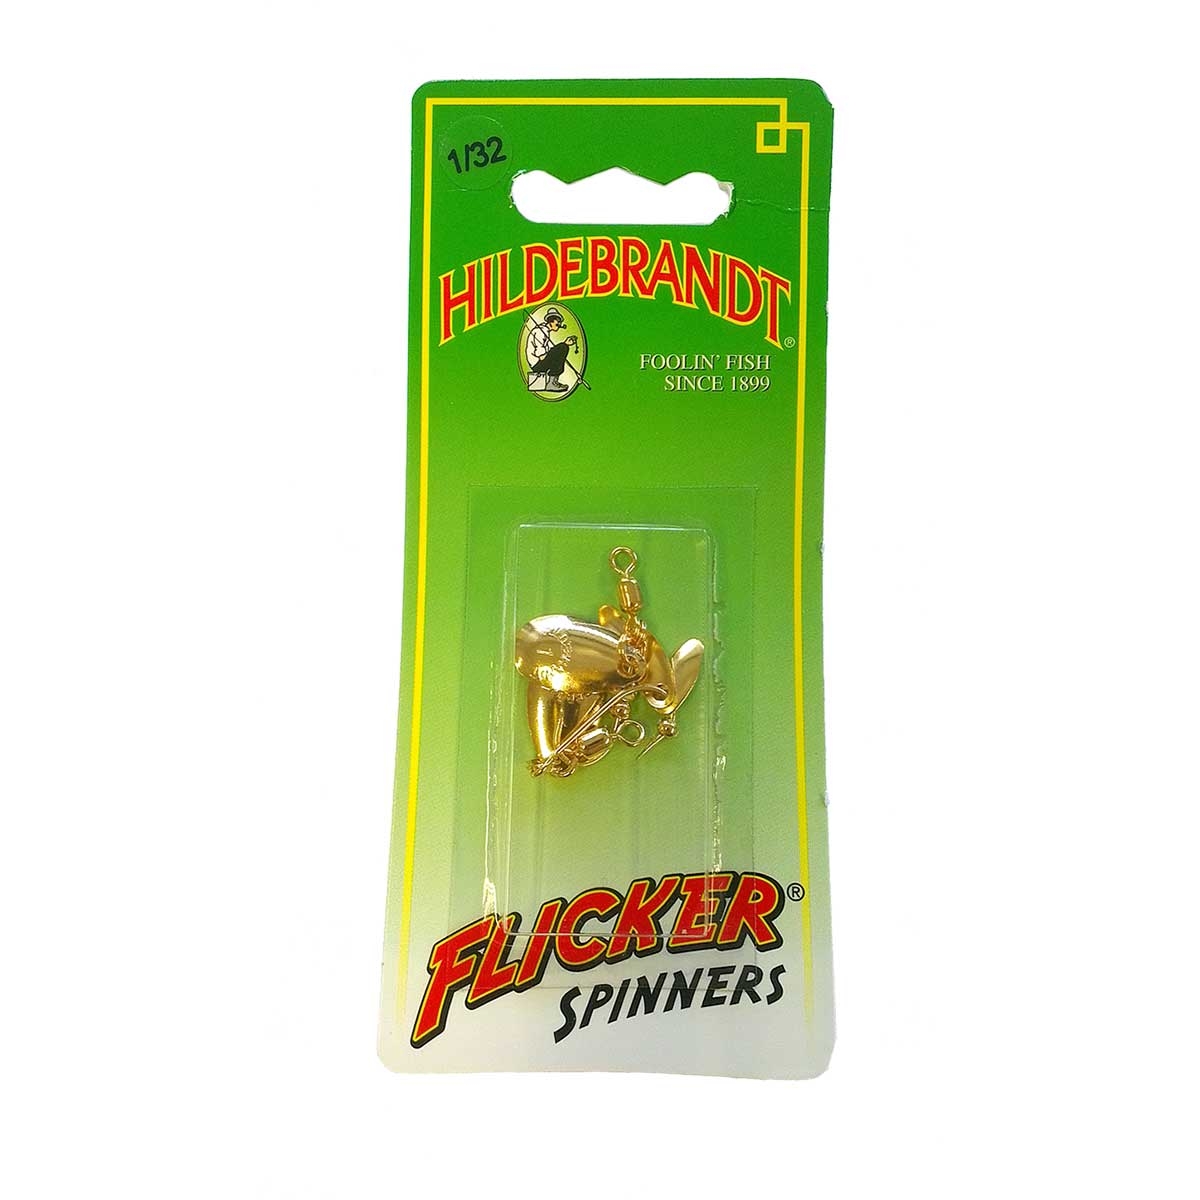 HILDEBRANDT Flicker Spinners 1/40oz Gold